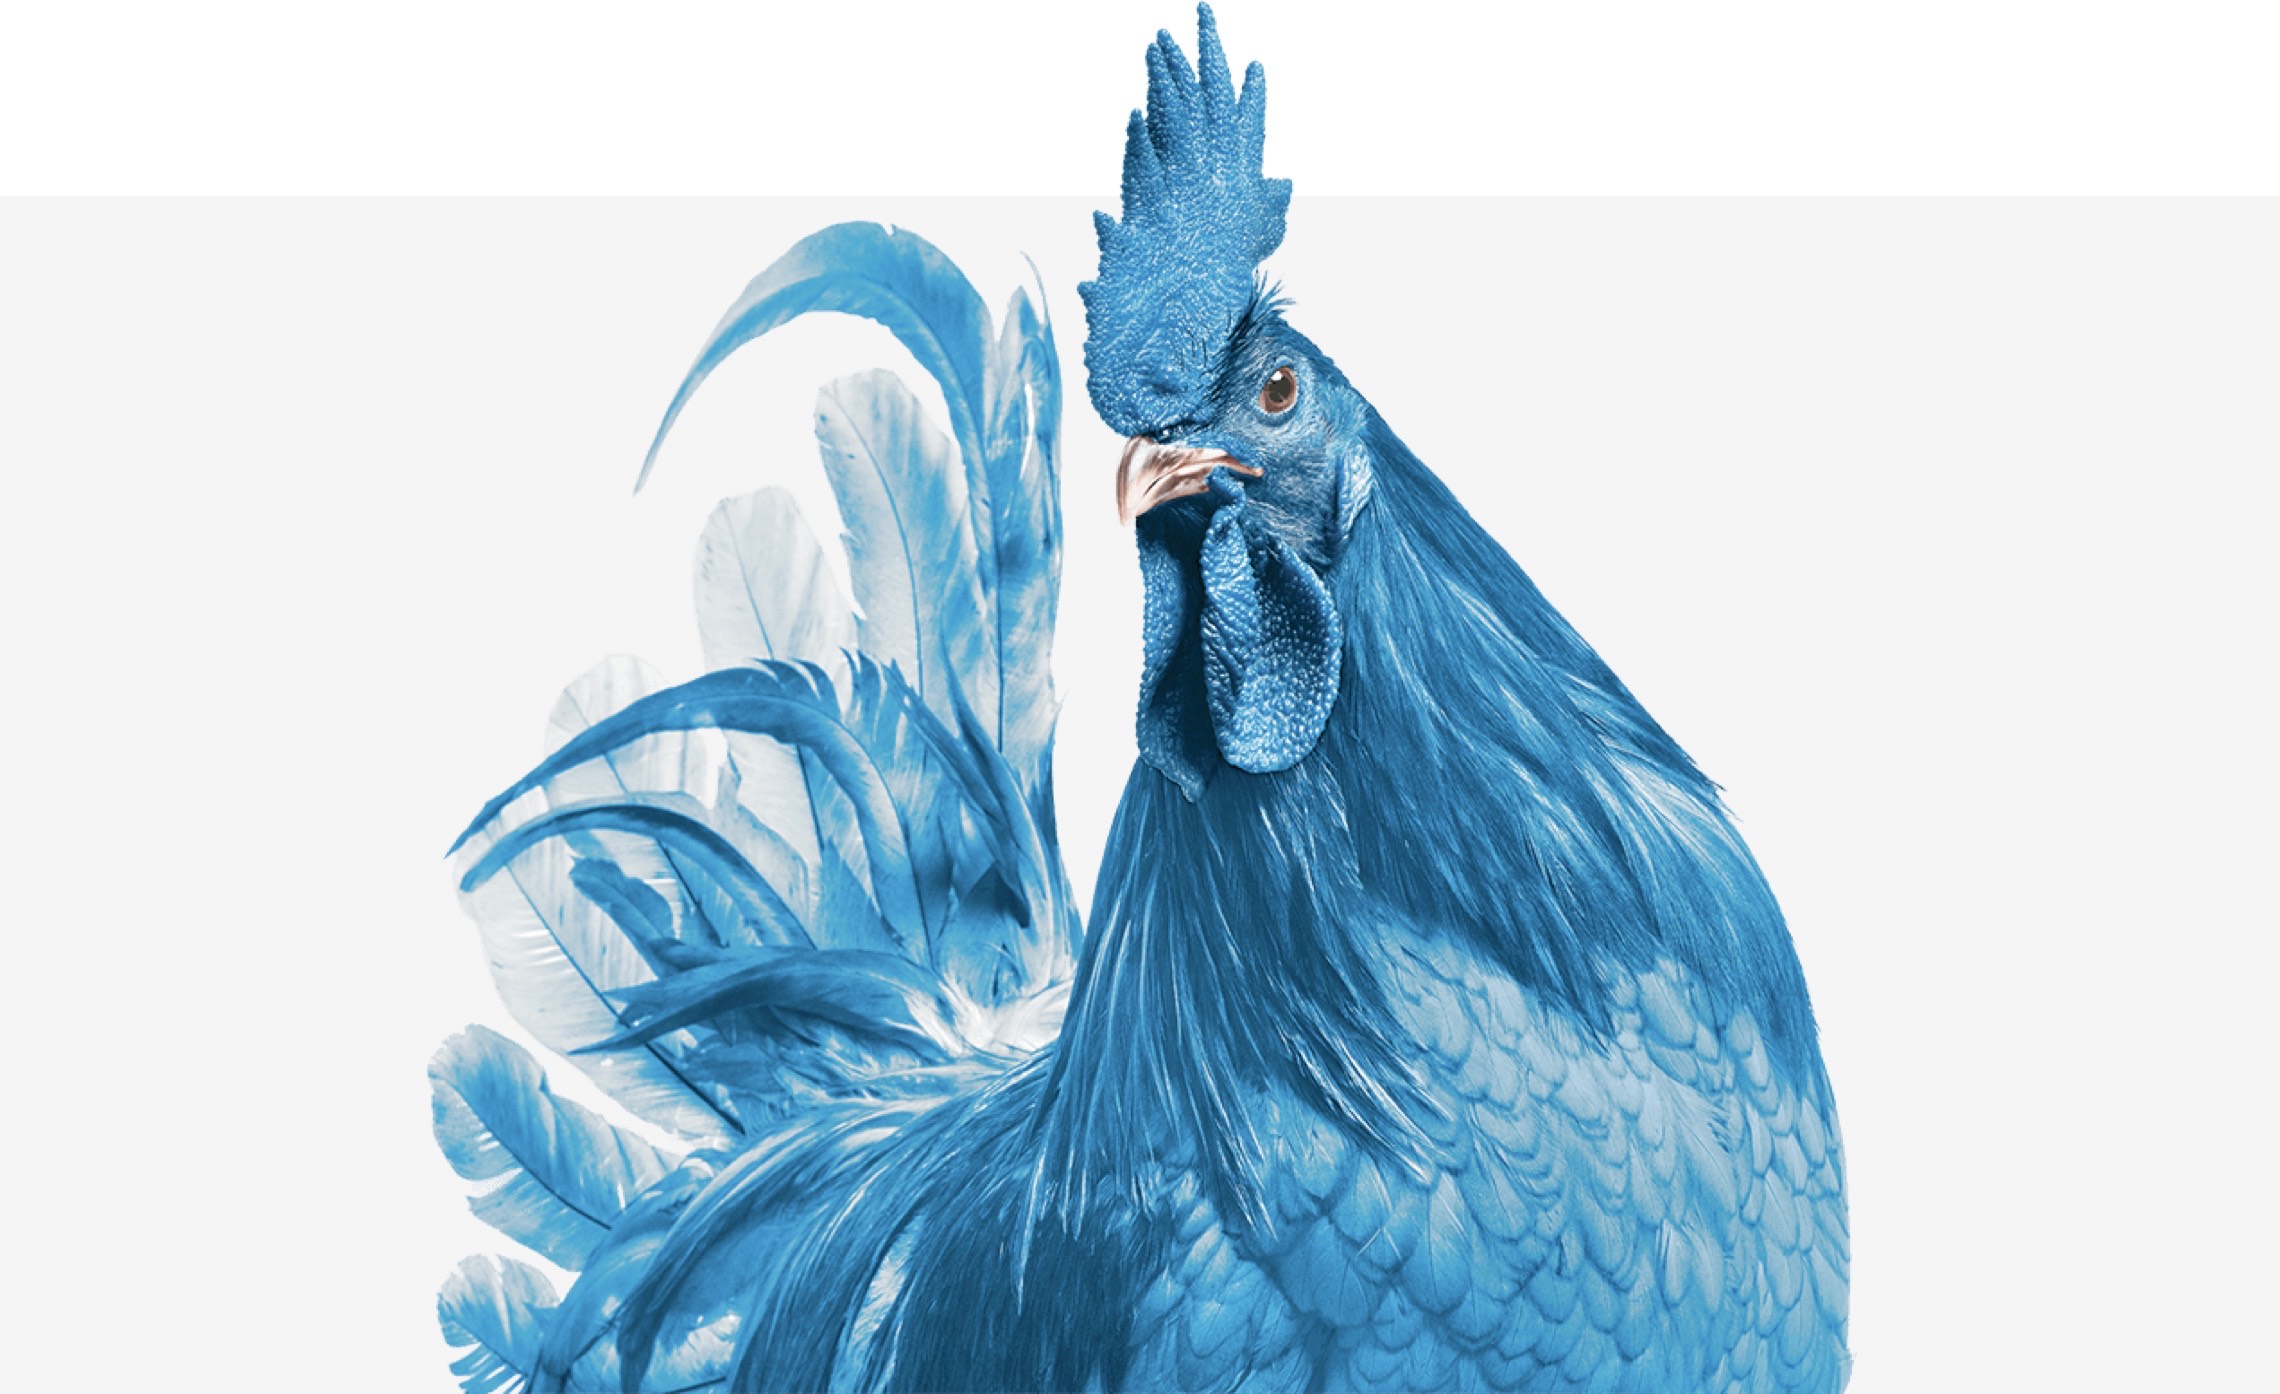 Photograph of a blue hen.